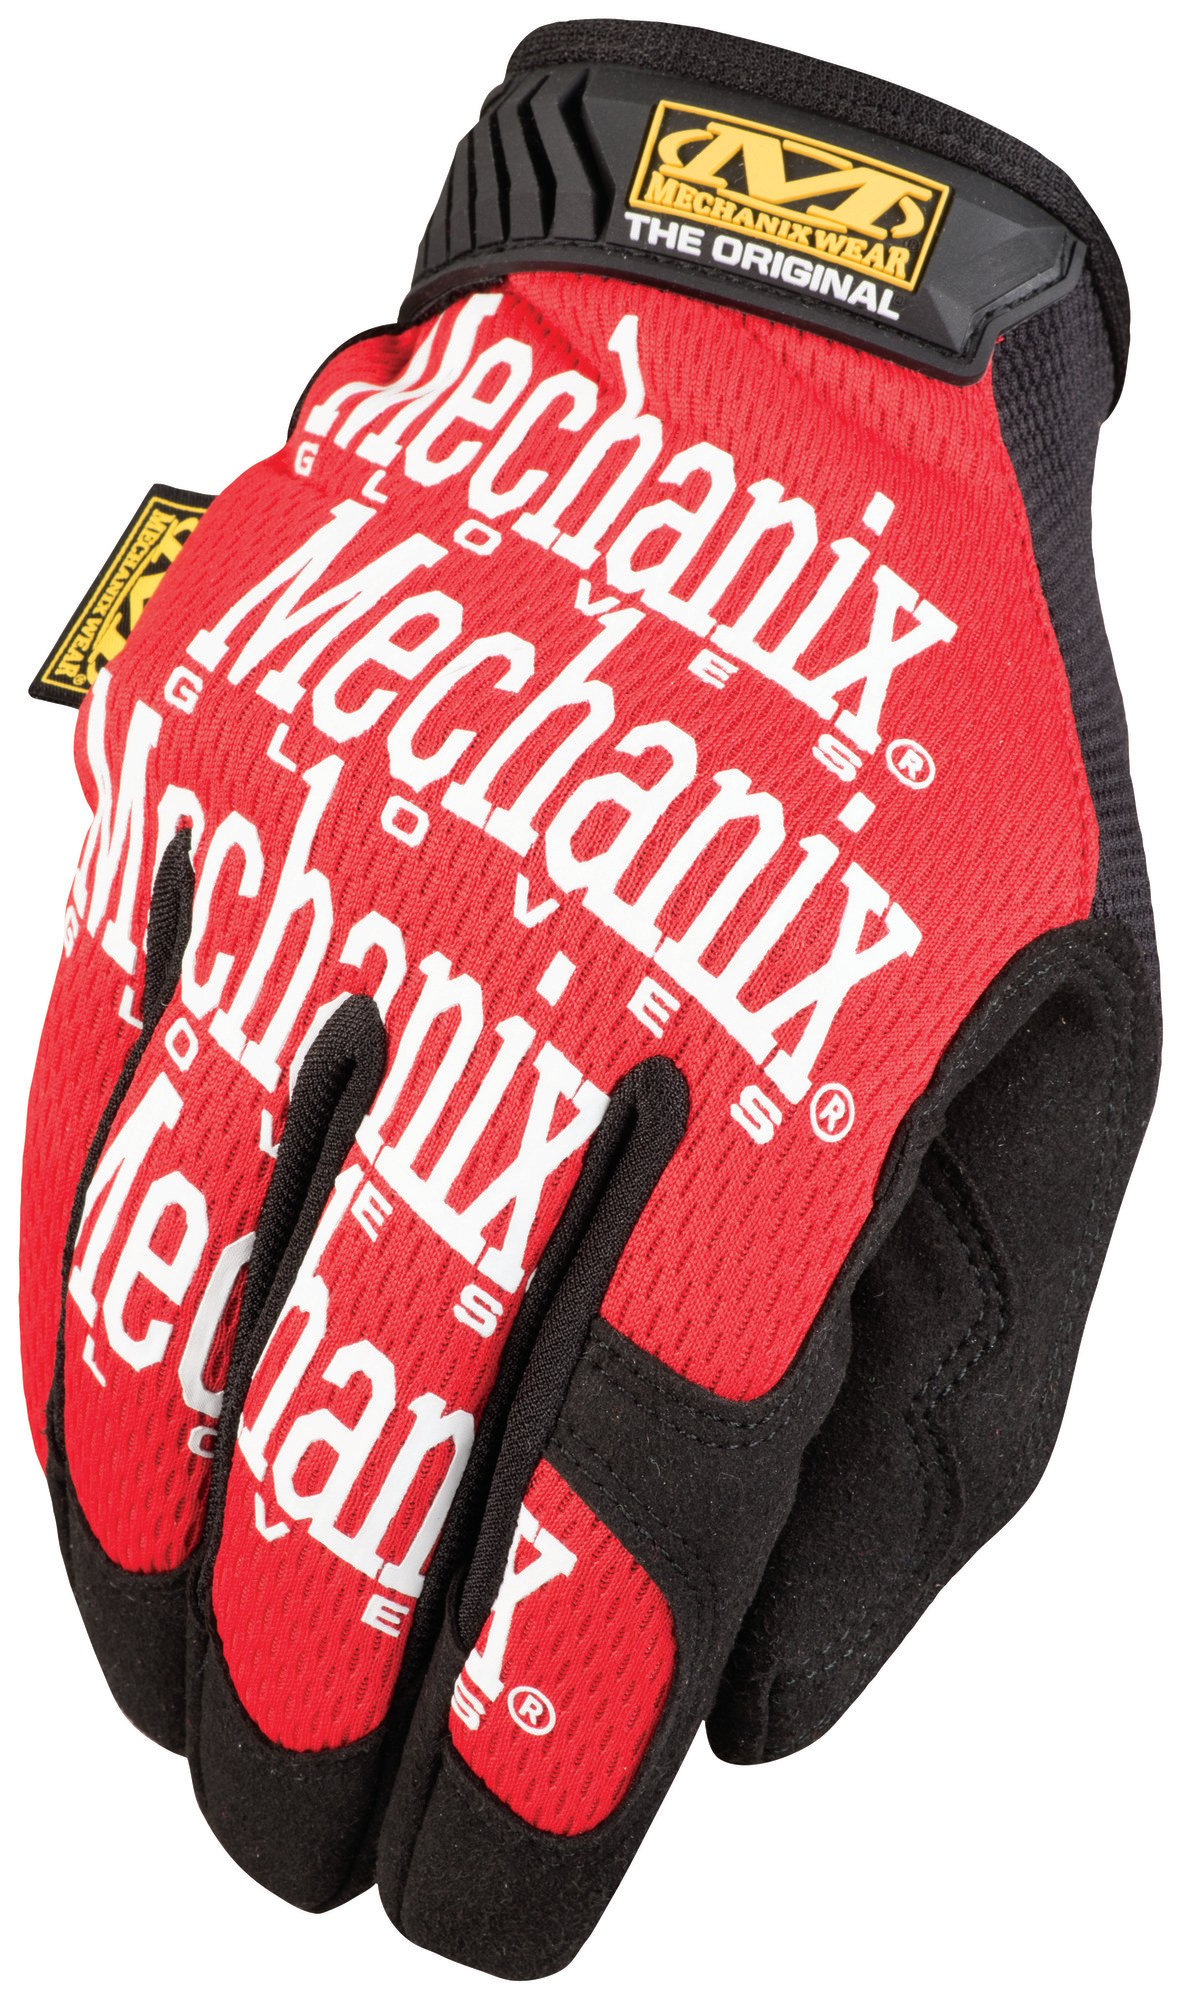 MECHANIX Pracovné rukavice so syntetickou kožou Original - červené XL/11